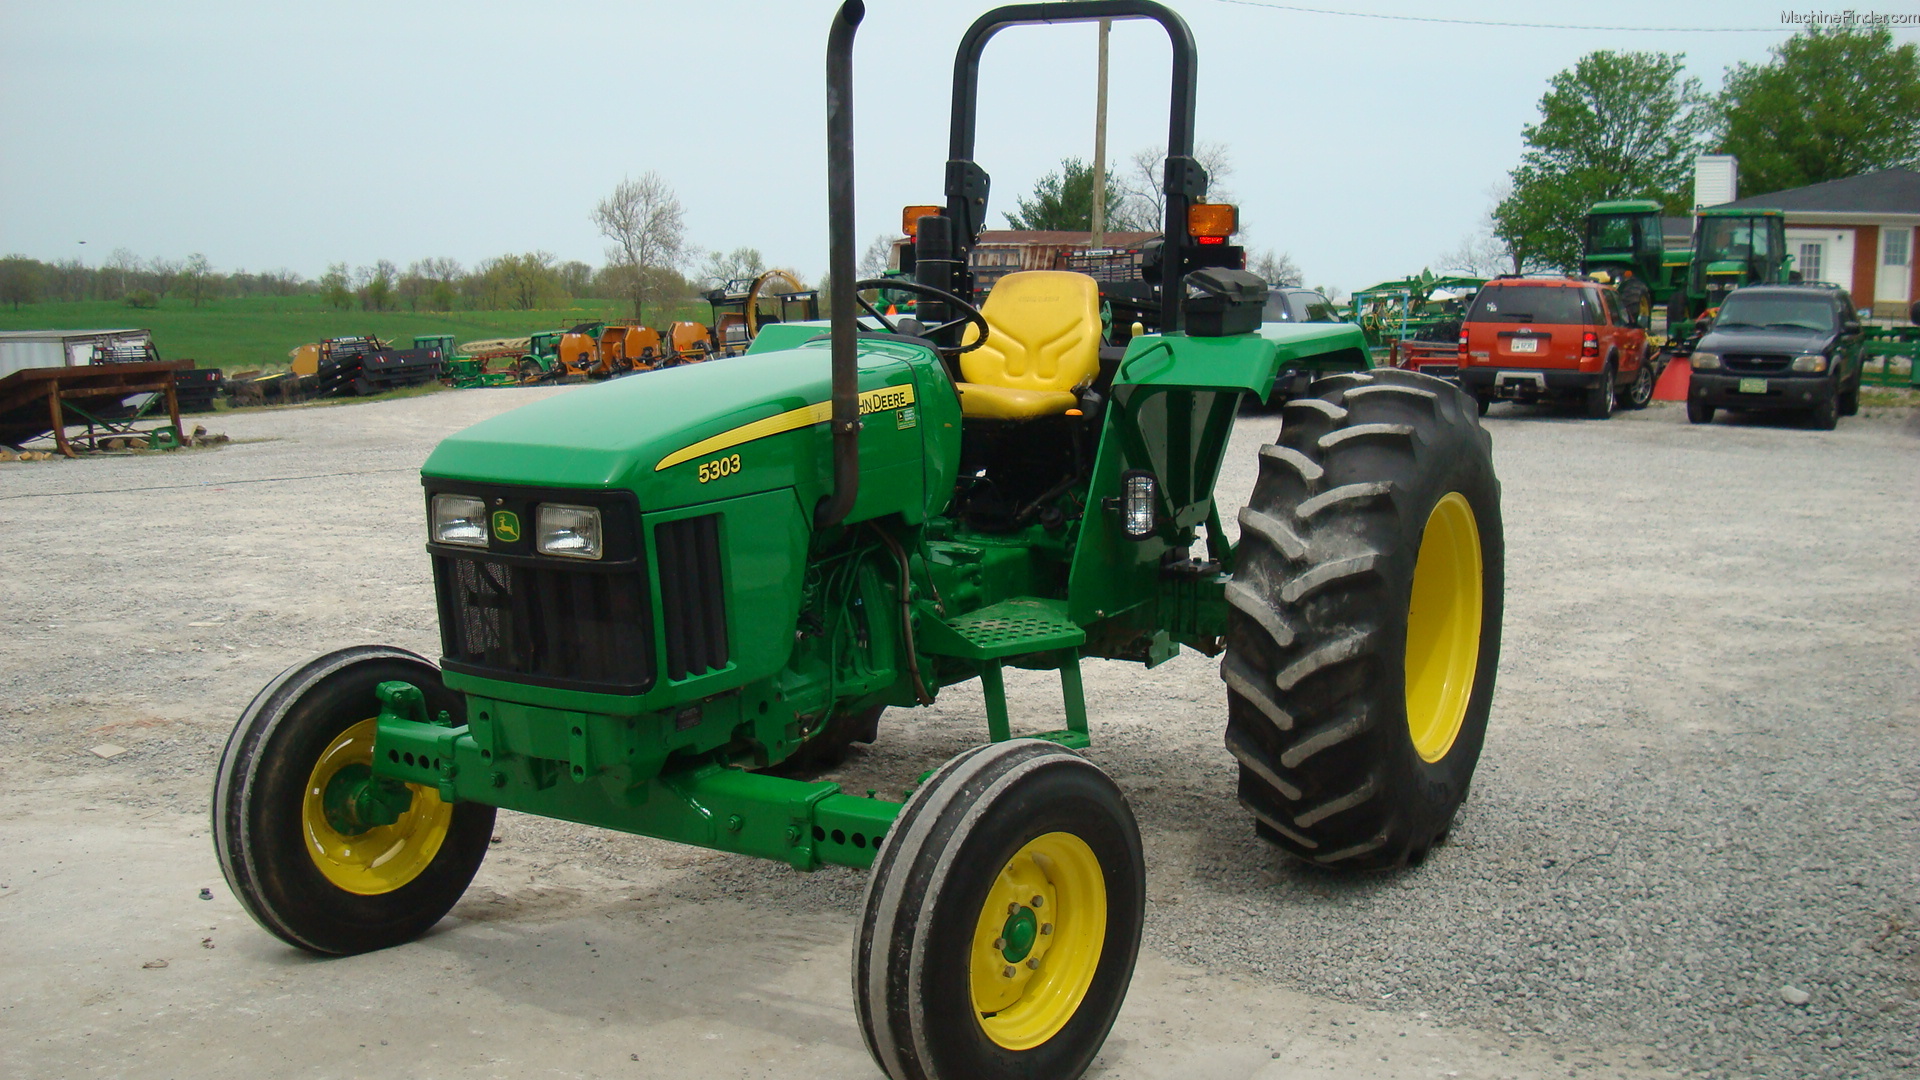 2008 John Deere 5303 Tractors - Utility (40-100hp) - John Deere ...